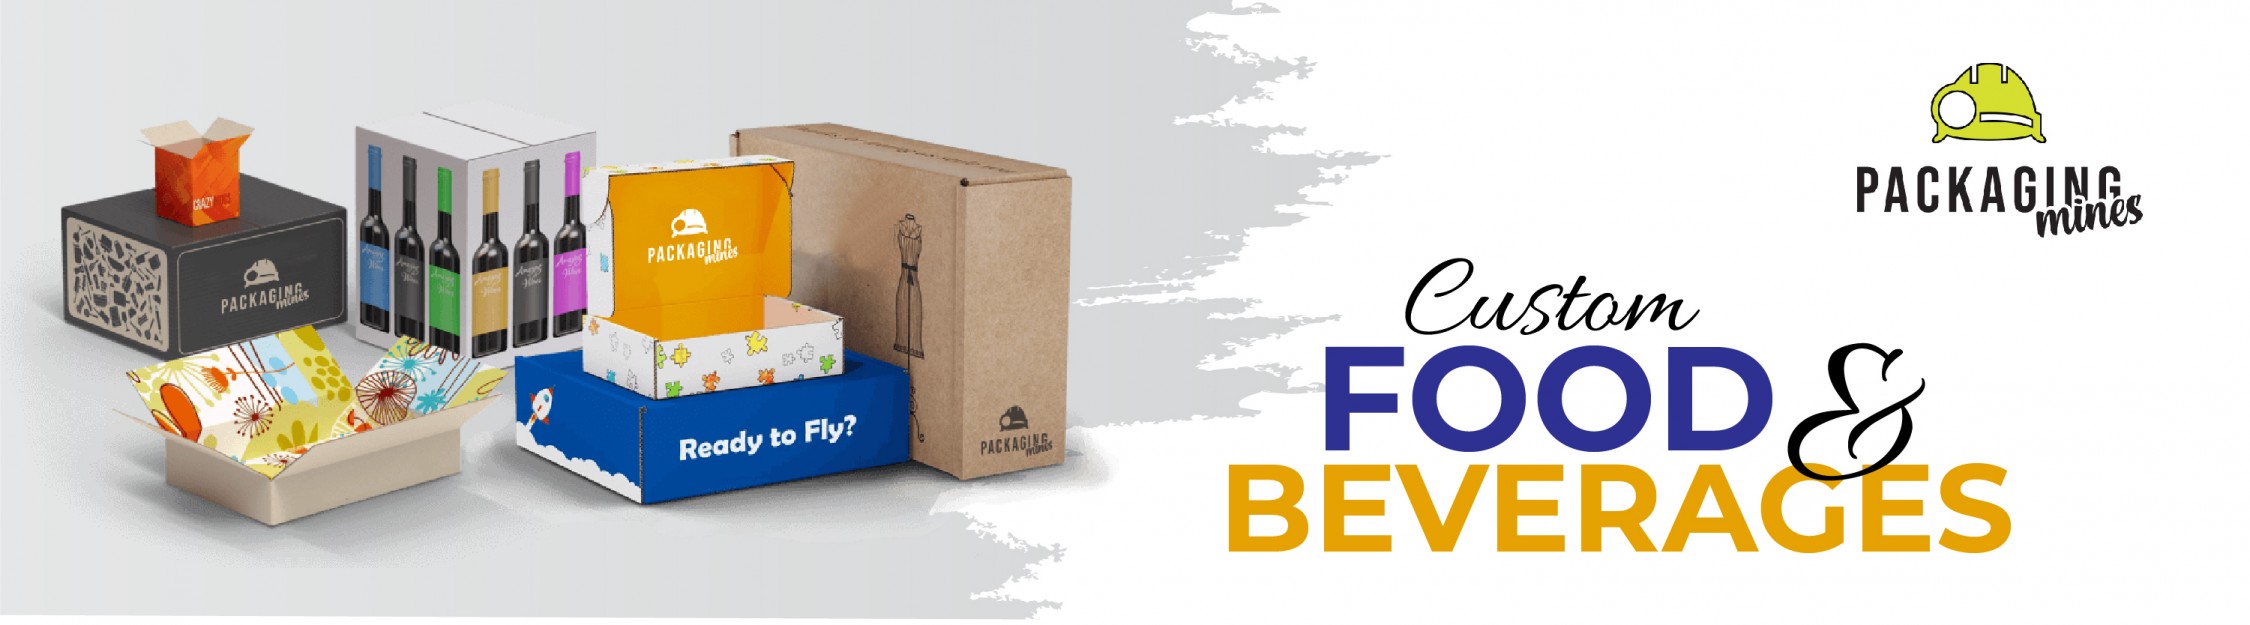 Custom Food Packaging Boxes - Packaging Mines